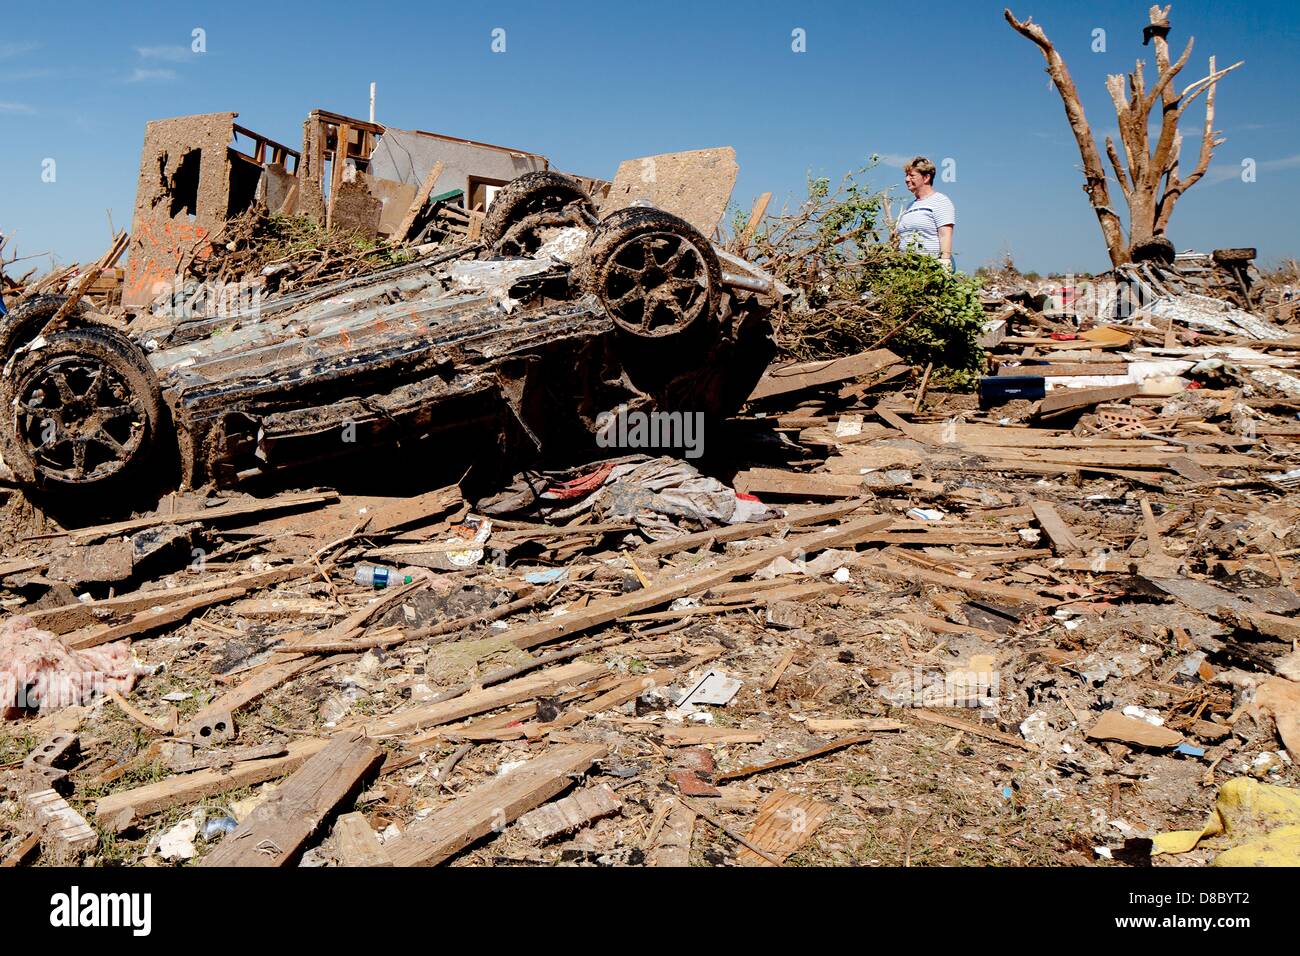 Les résidents au crible les décombres de leur maison à la suite d'une tornade EF-5 22 mai 2013 dans Moore, Oklahoma. La tempête avec des vents de plus de 200 miles par heure sur l'île de la banlieue d'Oklahoma City le 20 mai 2013, tuant au moins 24 personnes, en blessant plus de 230 et le déplacement de milliers. Banque D'Images